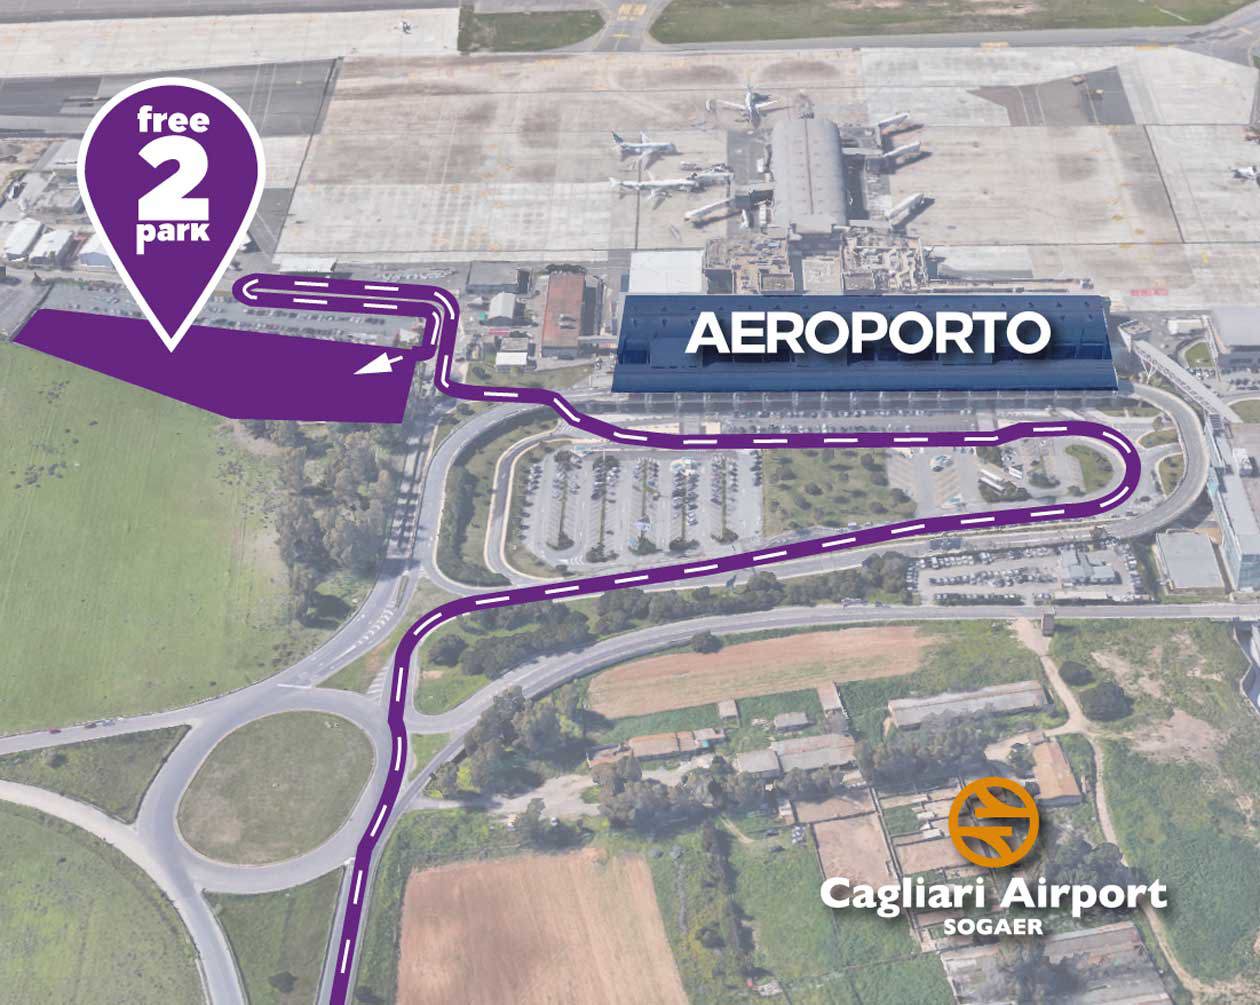 Aeroporto di Cagliari: nuovo parcheggio Free2Park. Copyright © Aeroporto di Cagliari.